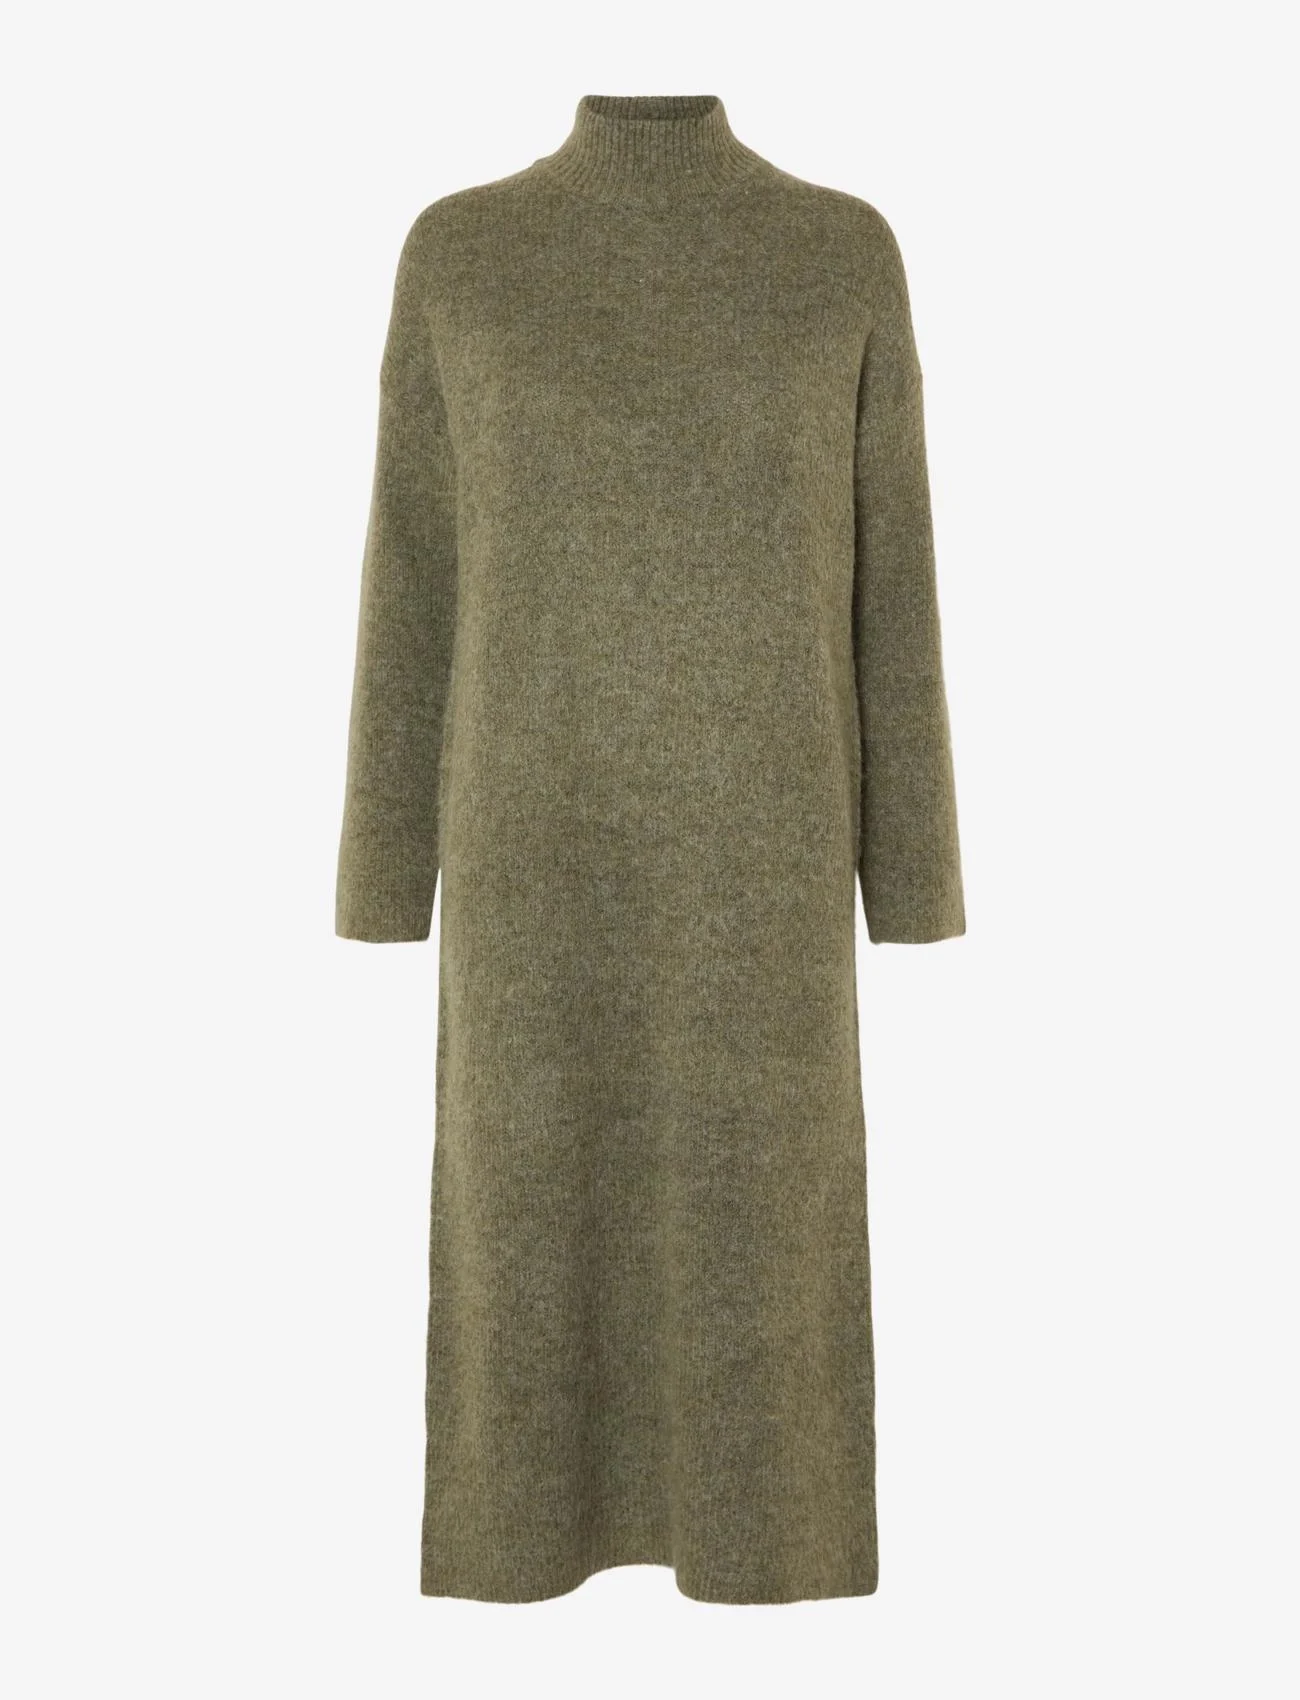 Selected Femme - SLFMALINE LS KNIT DRESS HIGH NECK NOOS - strickkleider - dusky green - 0